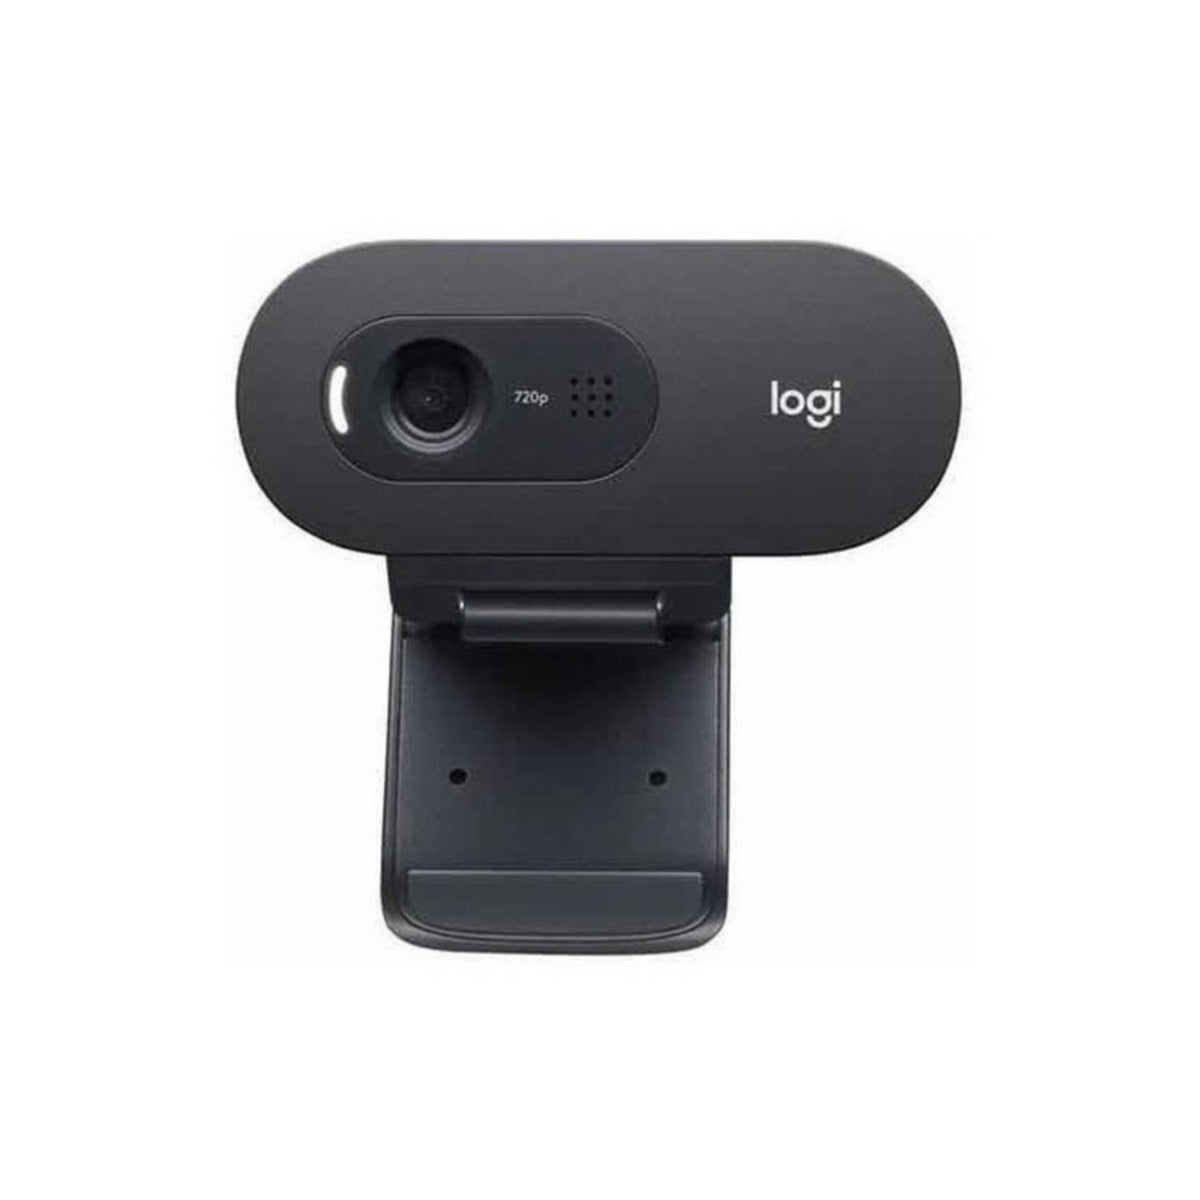 Webcam Logitech  C270  720p HD 30fps